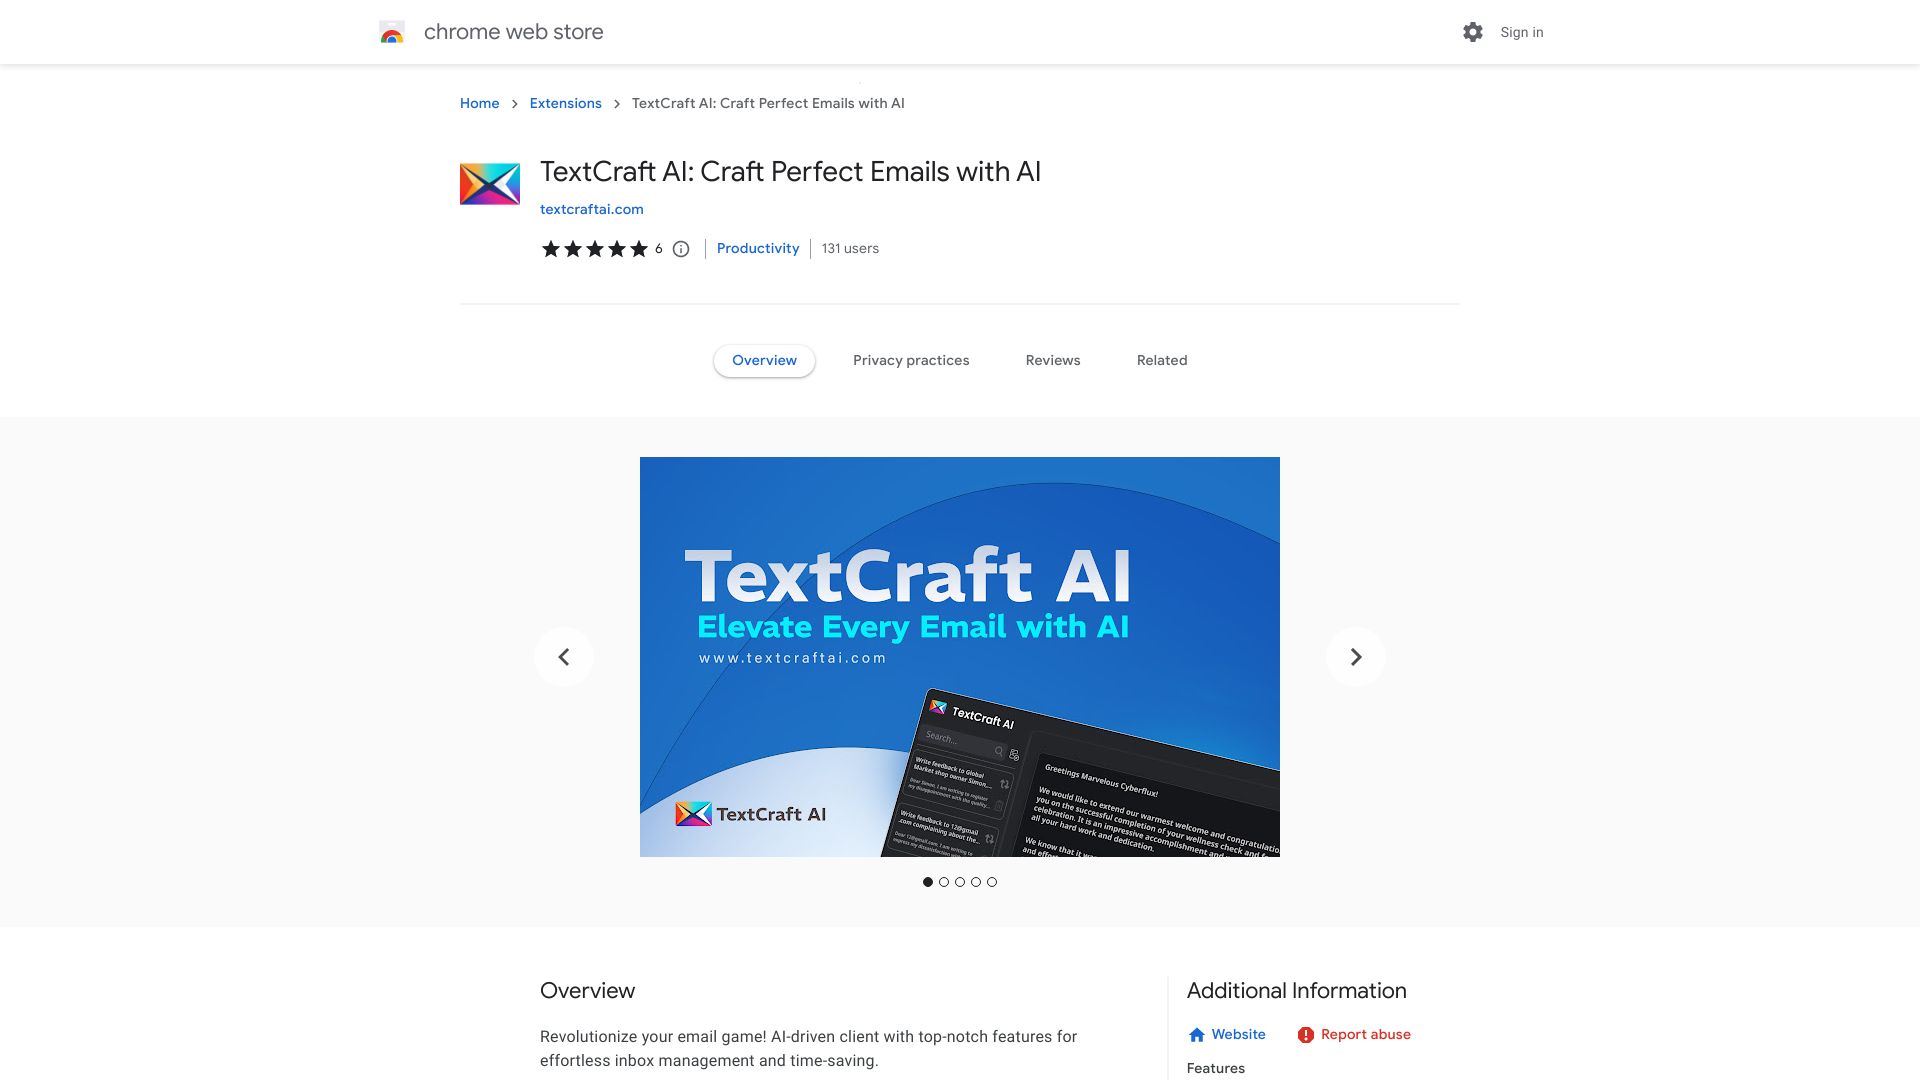 TextCraft AI